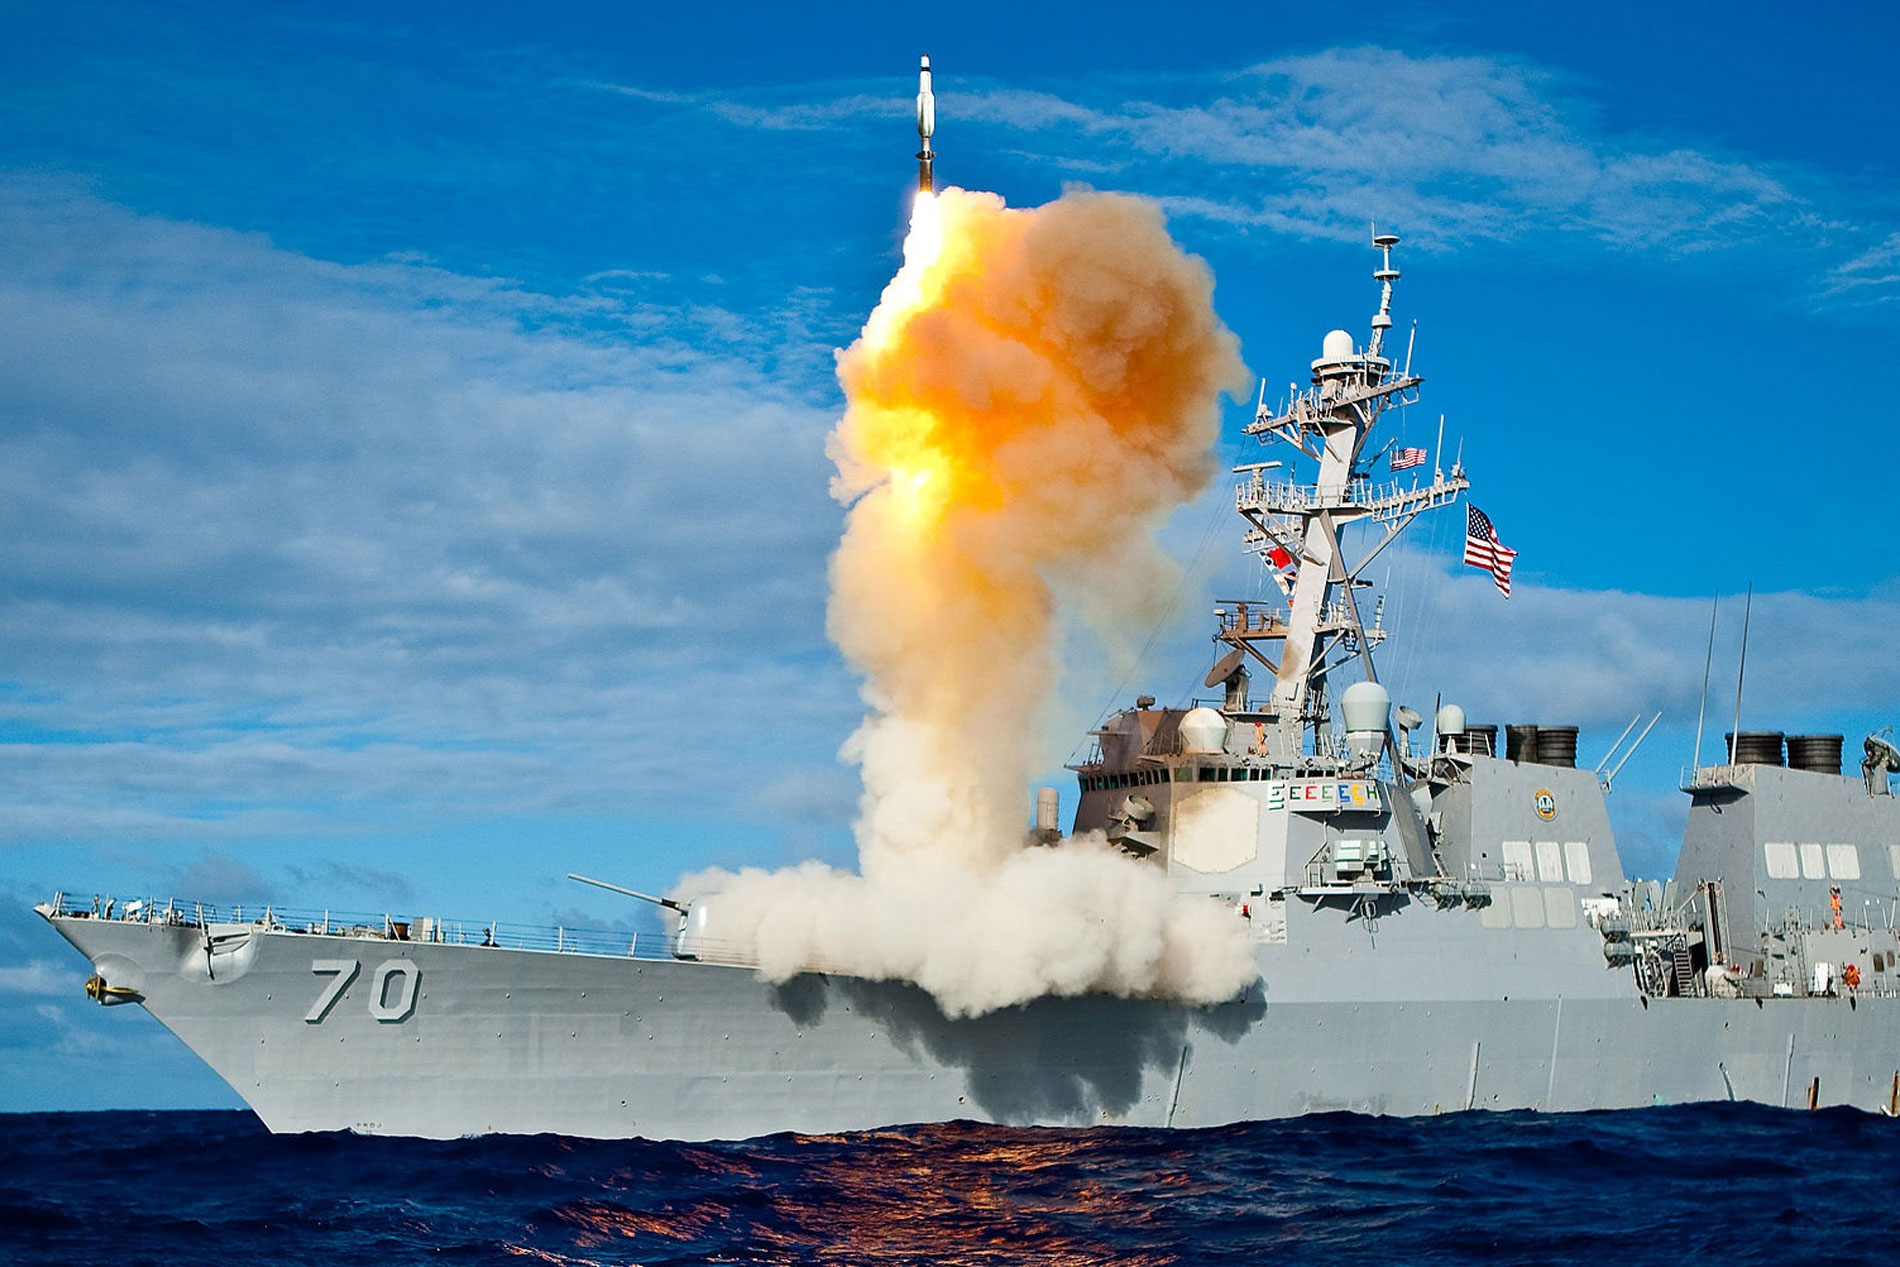 Navy destroyer firing missile